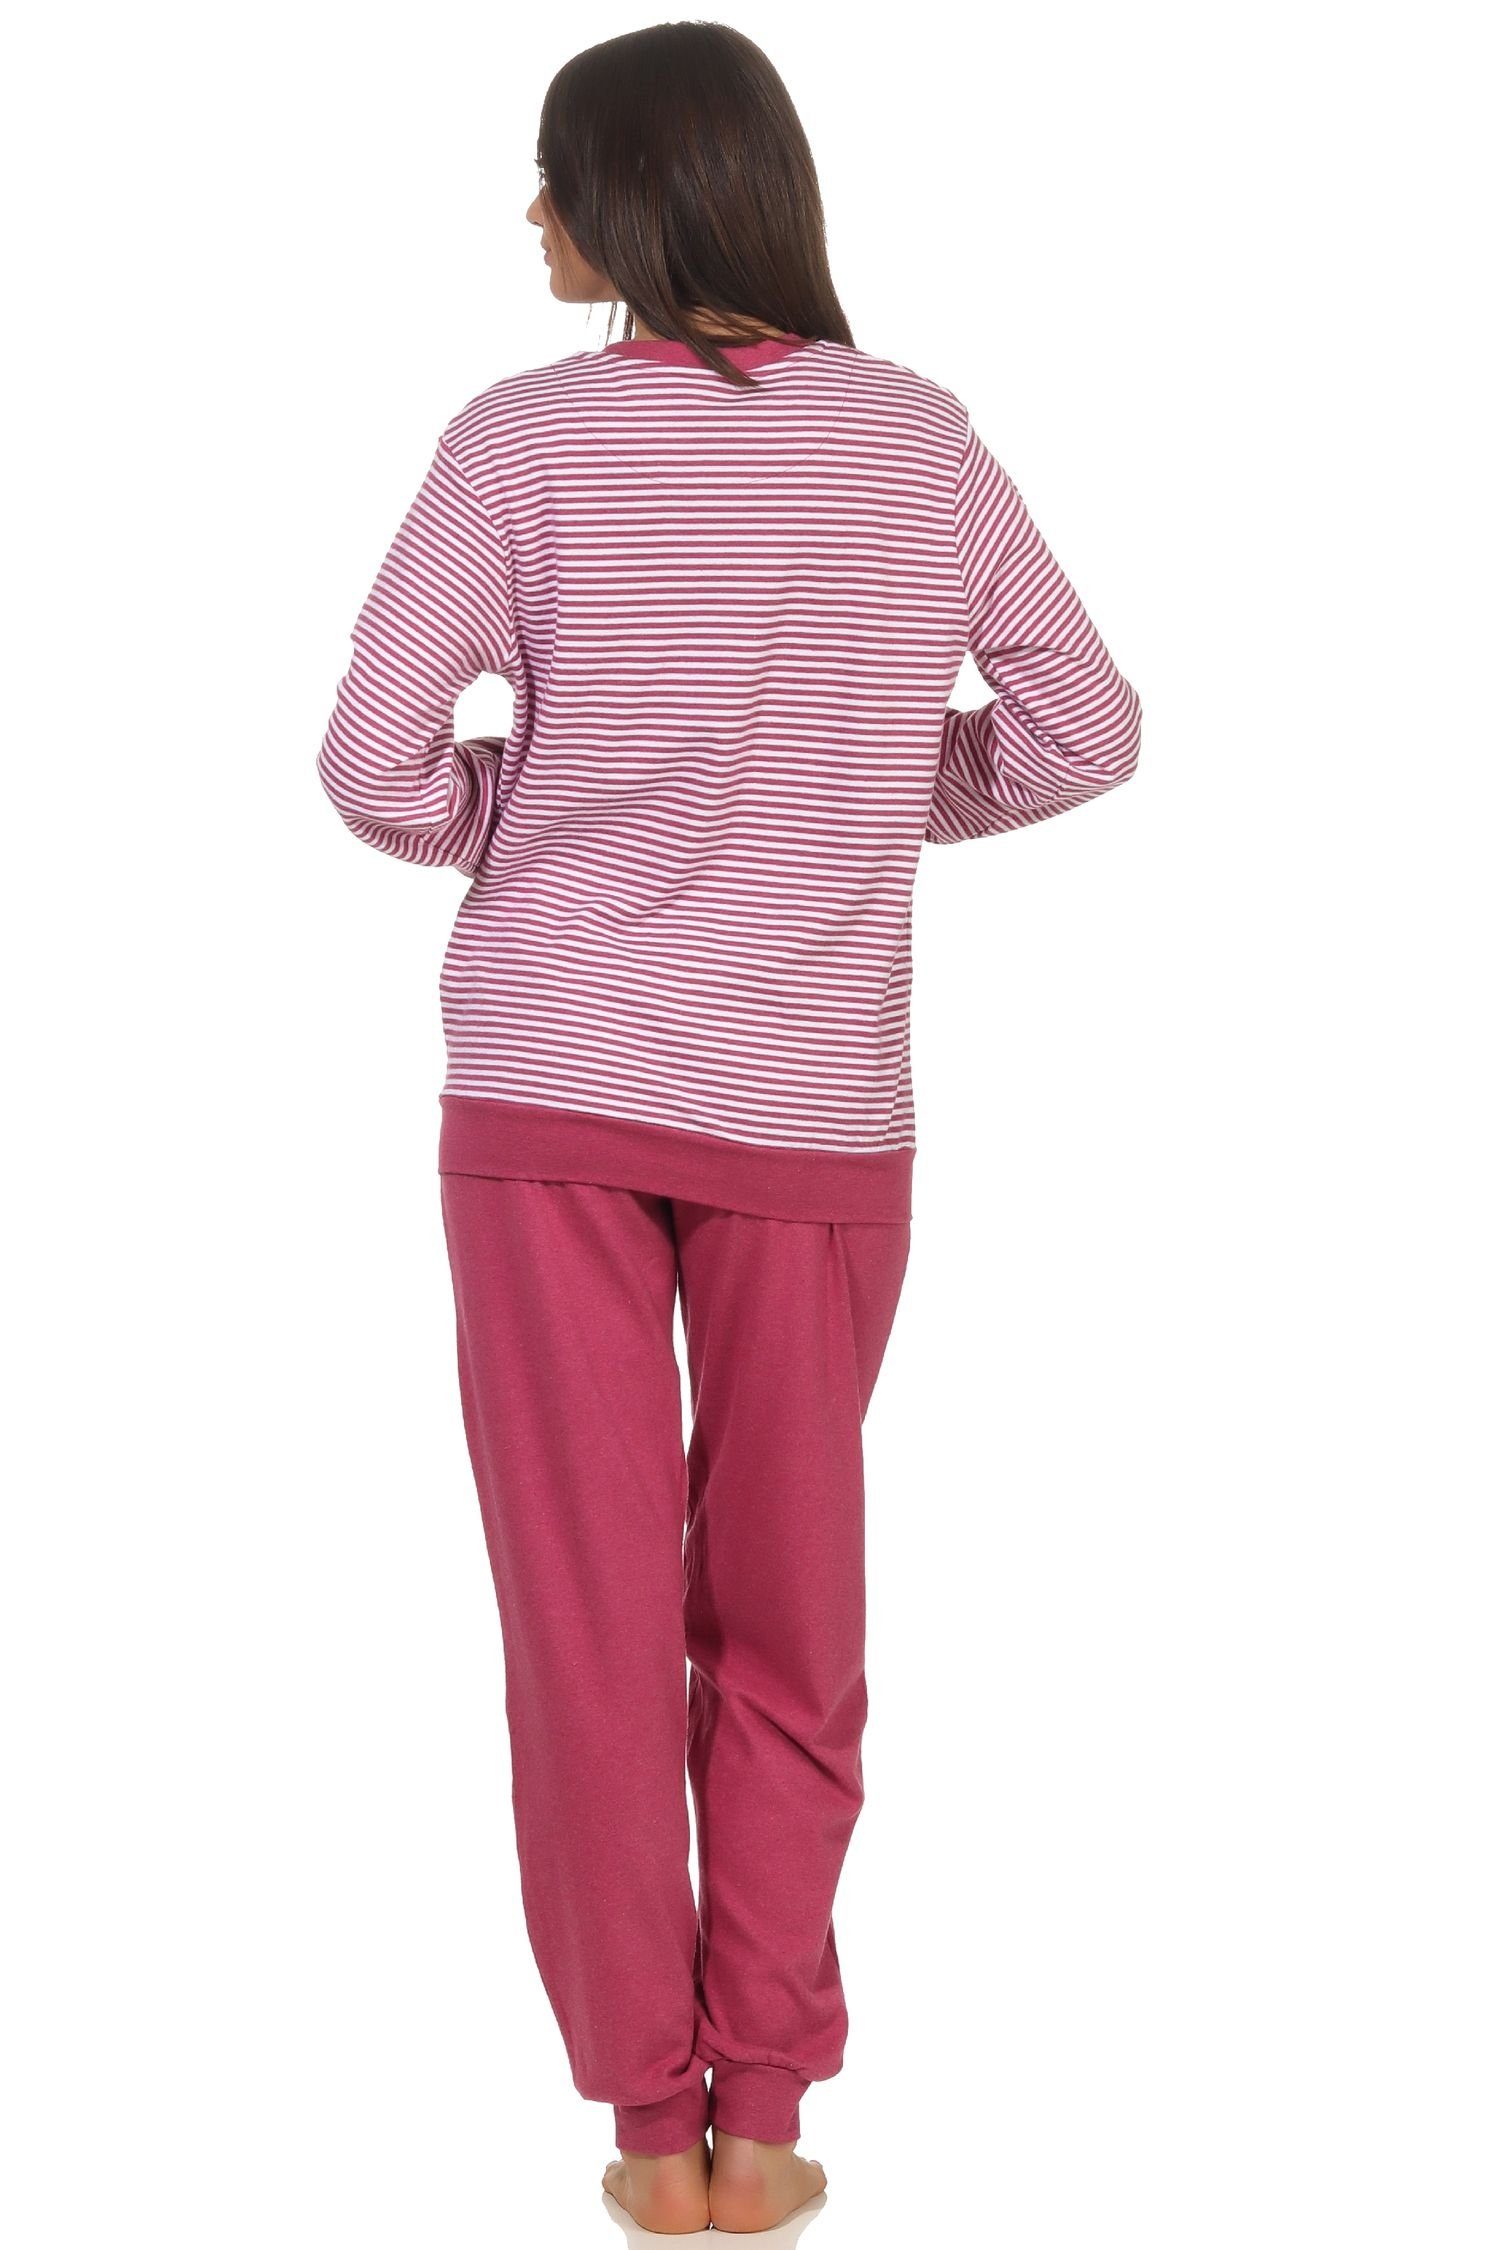 Wäsche/Bademode Pyjamas Normann Pyjama Eleganter Damen Pyjama Schlafanzug langam mit Bündchen in kuscheliger Interlock Qualität